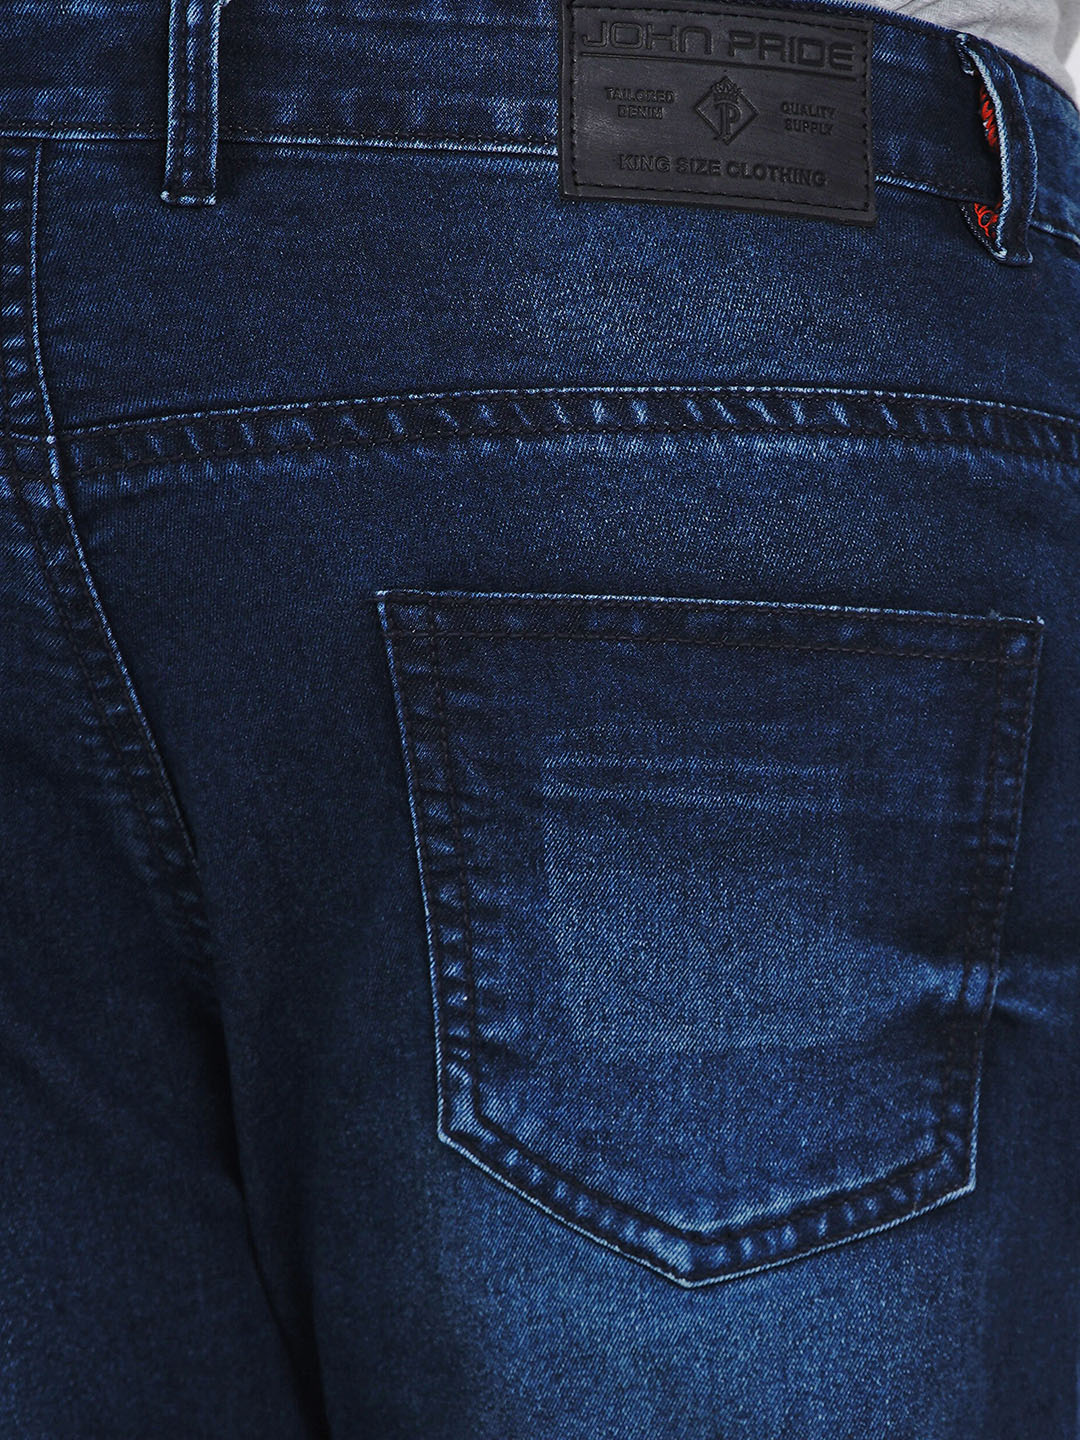 affordables/jeans/JPJ2014/jpj2014-3.jpg